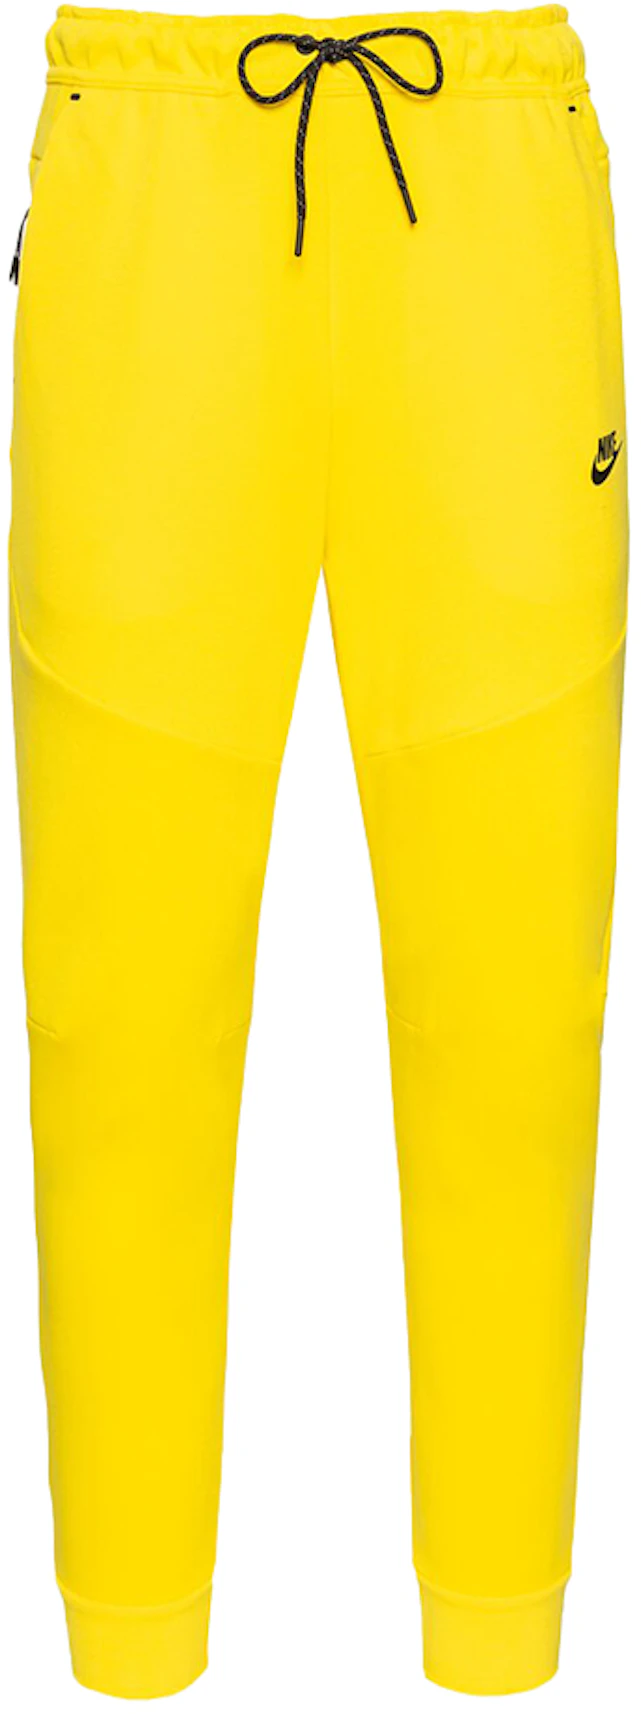 Nike Tech Fleece Pant Yellow Strike/Black US